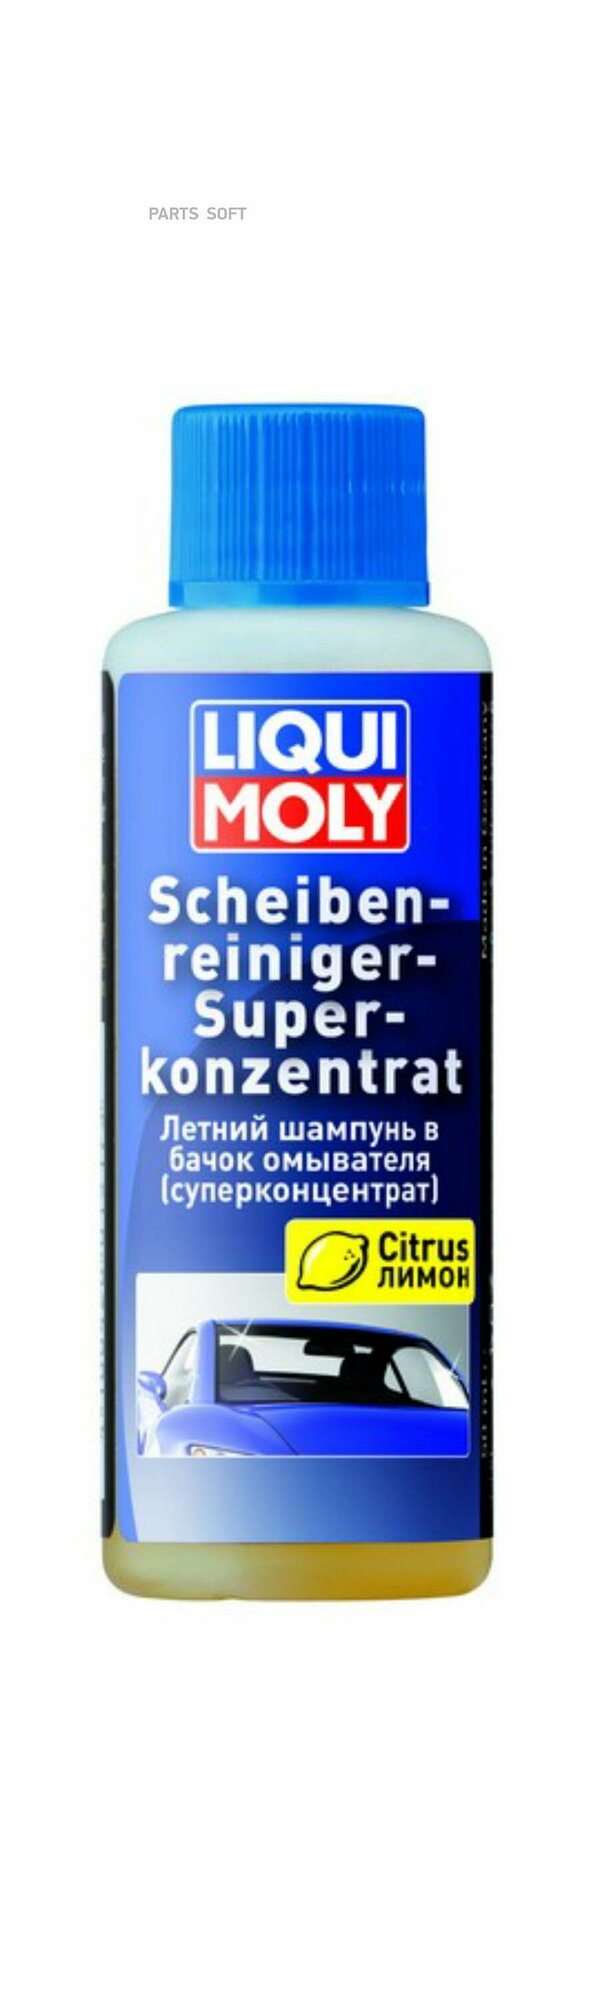 LIQUI MOLY 1967 LiquiMoly Scheiben-Reiniger-Super Konzentrat 0.05L_шампунь летний в бачок омывателя !\